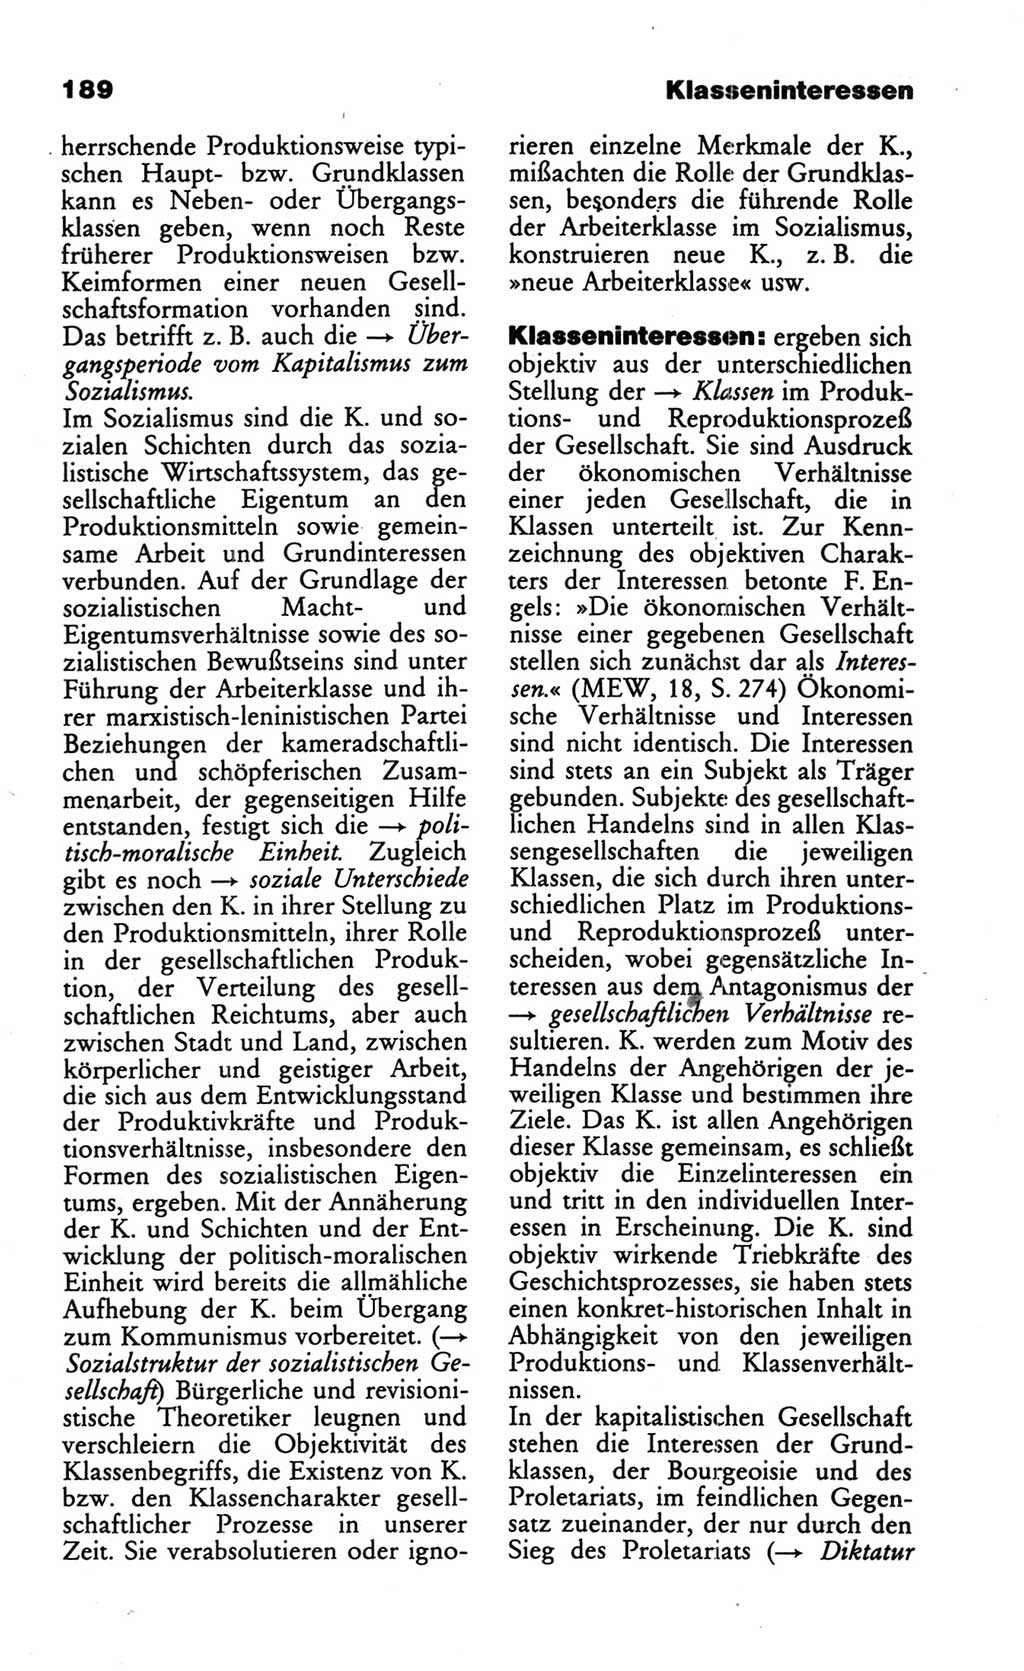 Wörterbuch des wissenschaftlichen Kommunismus [Deutsche Demokratische Republik (DDR)] 1986, Seite 189 (Wb. wiss. Komm. DDR 1986, S. 189)